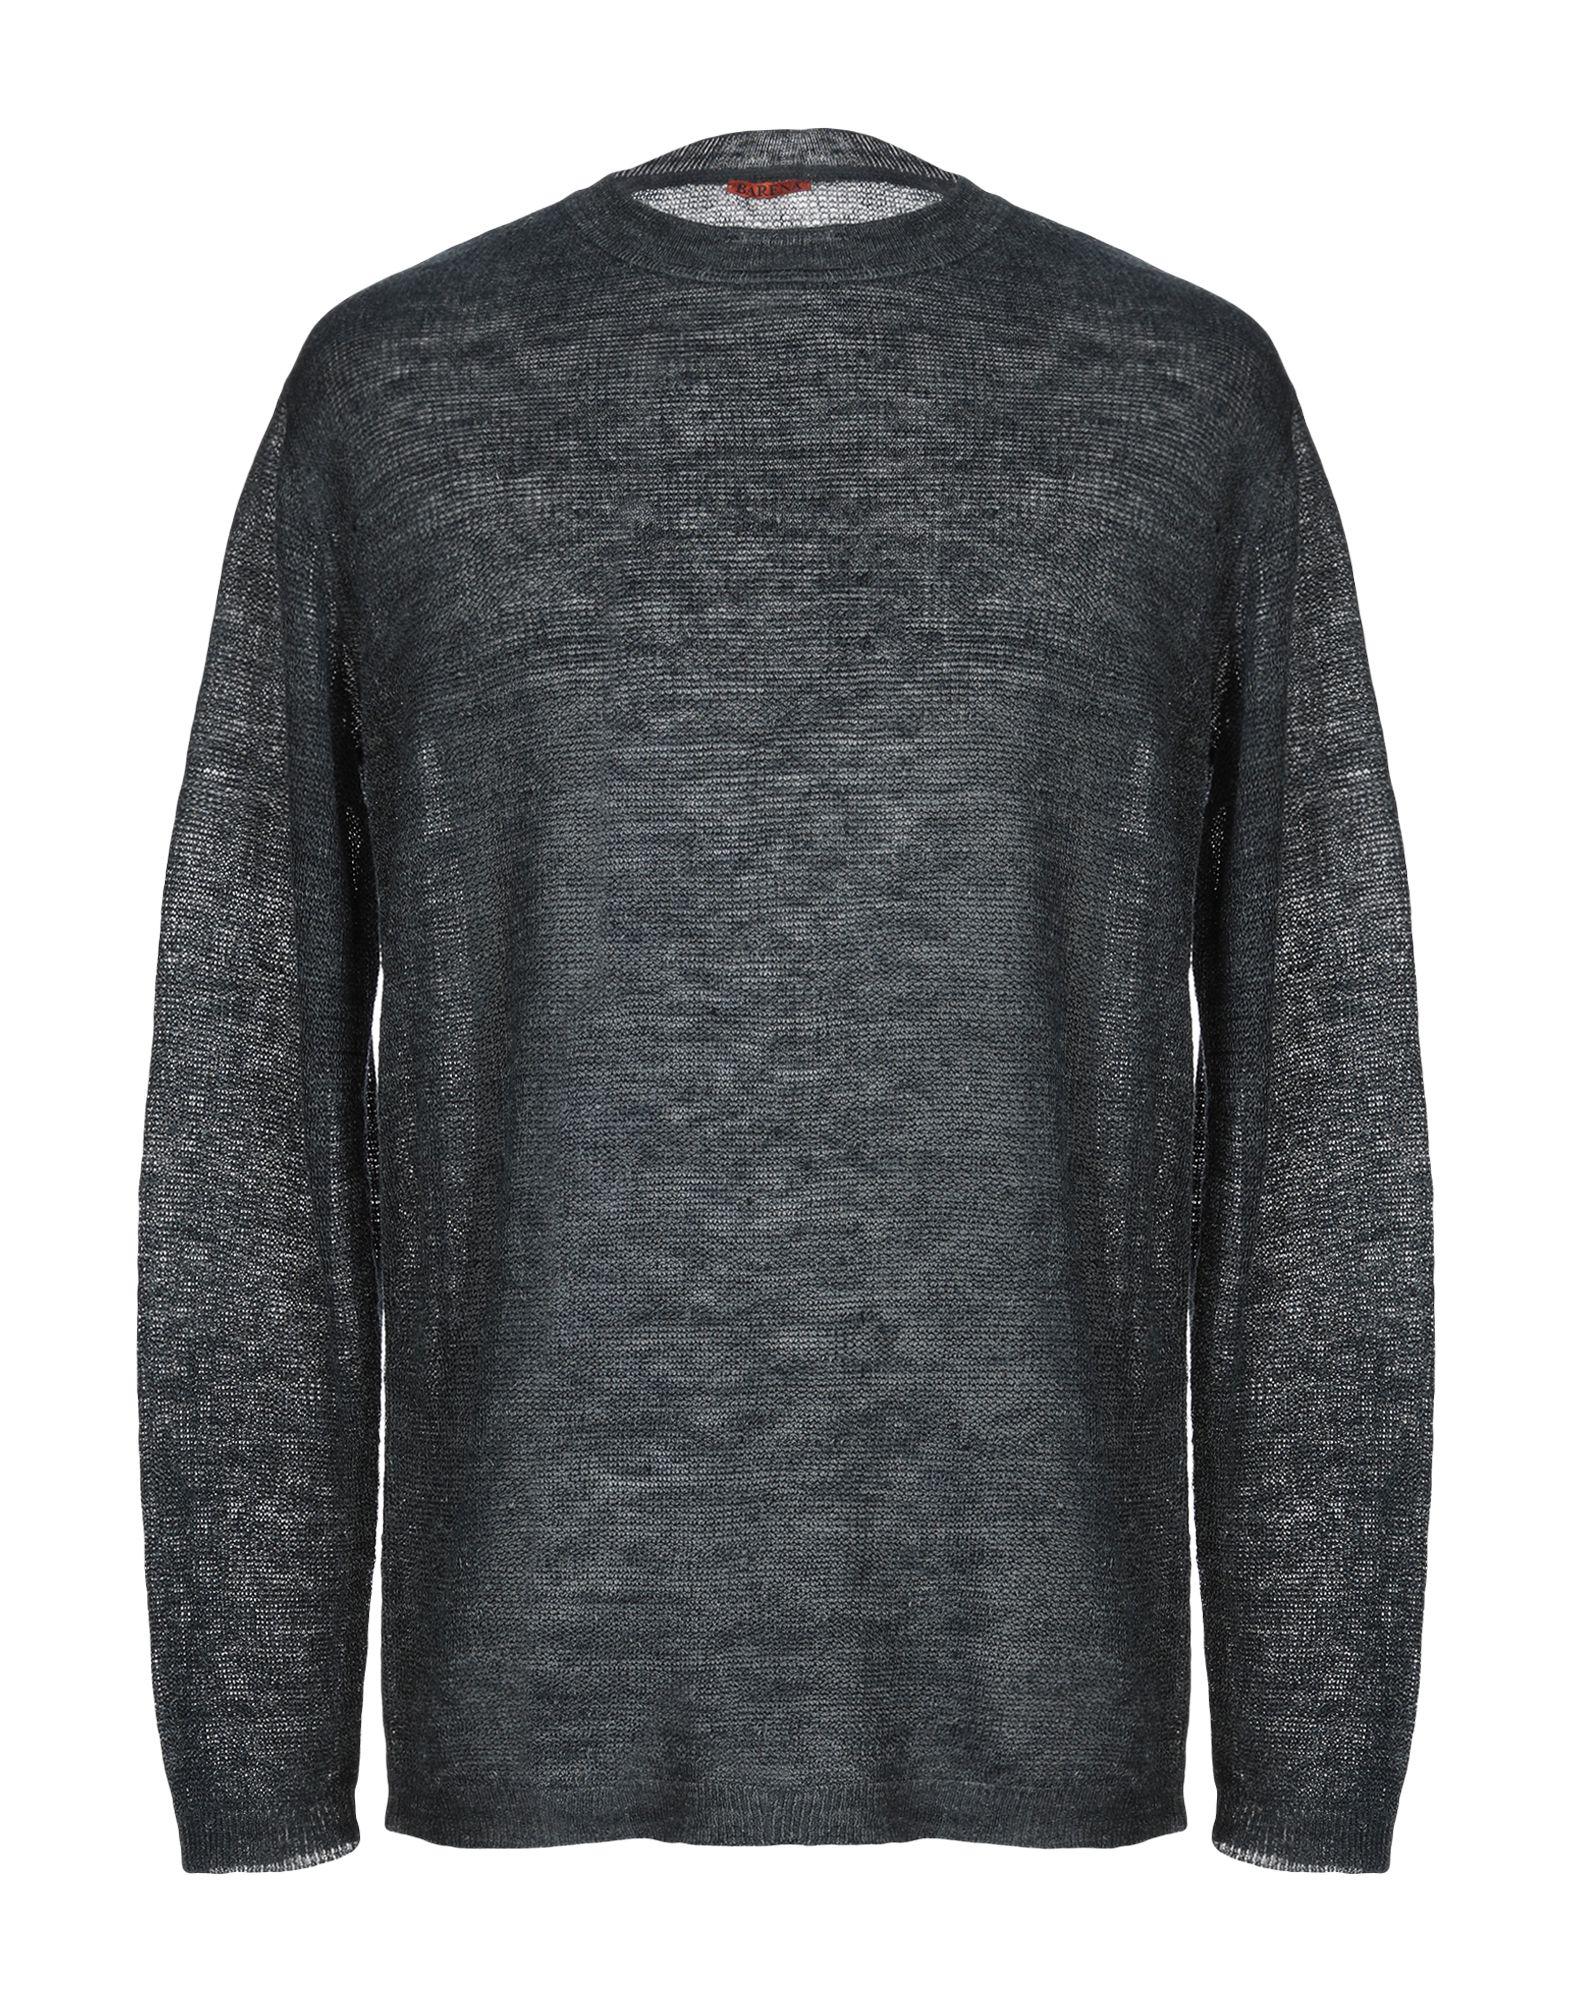 Barena Linen Jumper in Steel Grey (Gray) for Men - Lyst